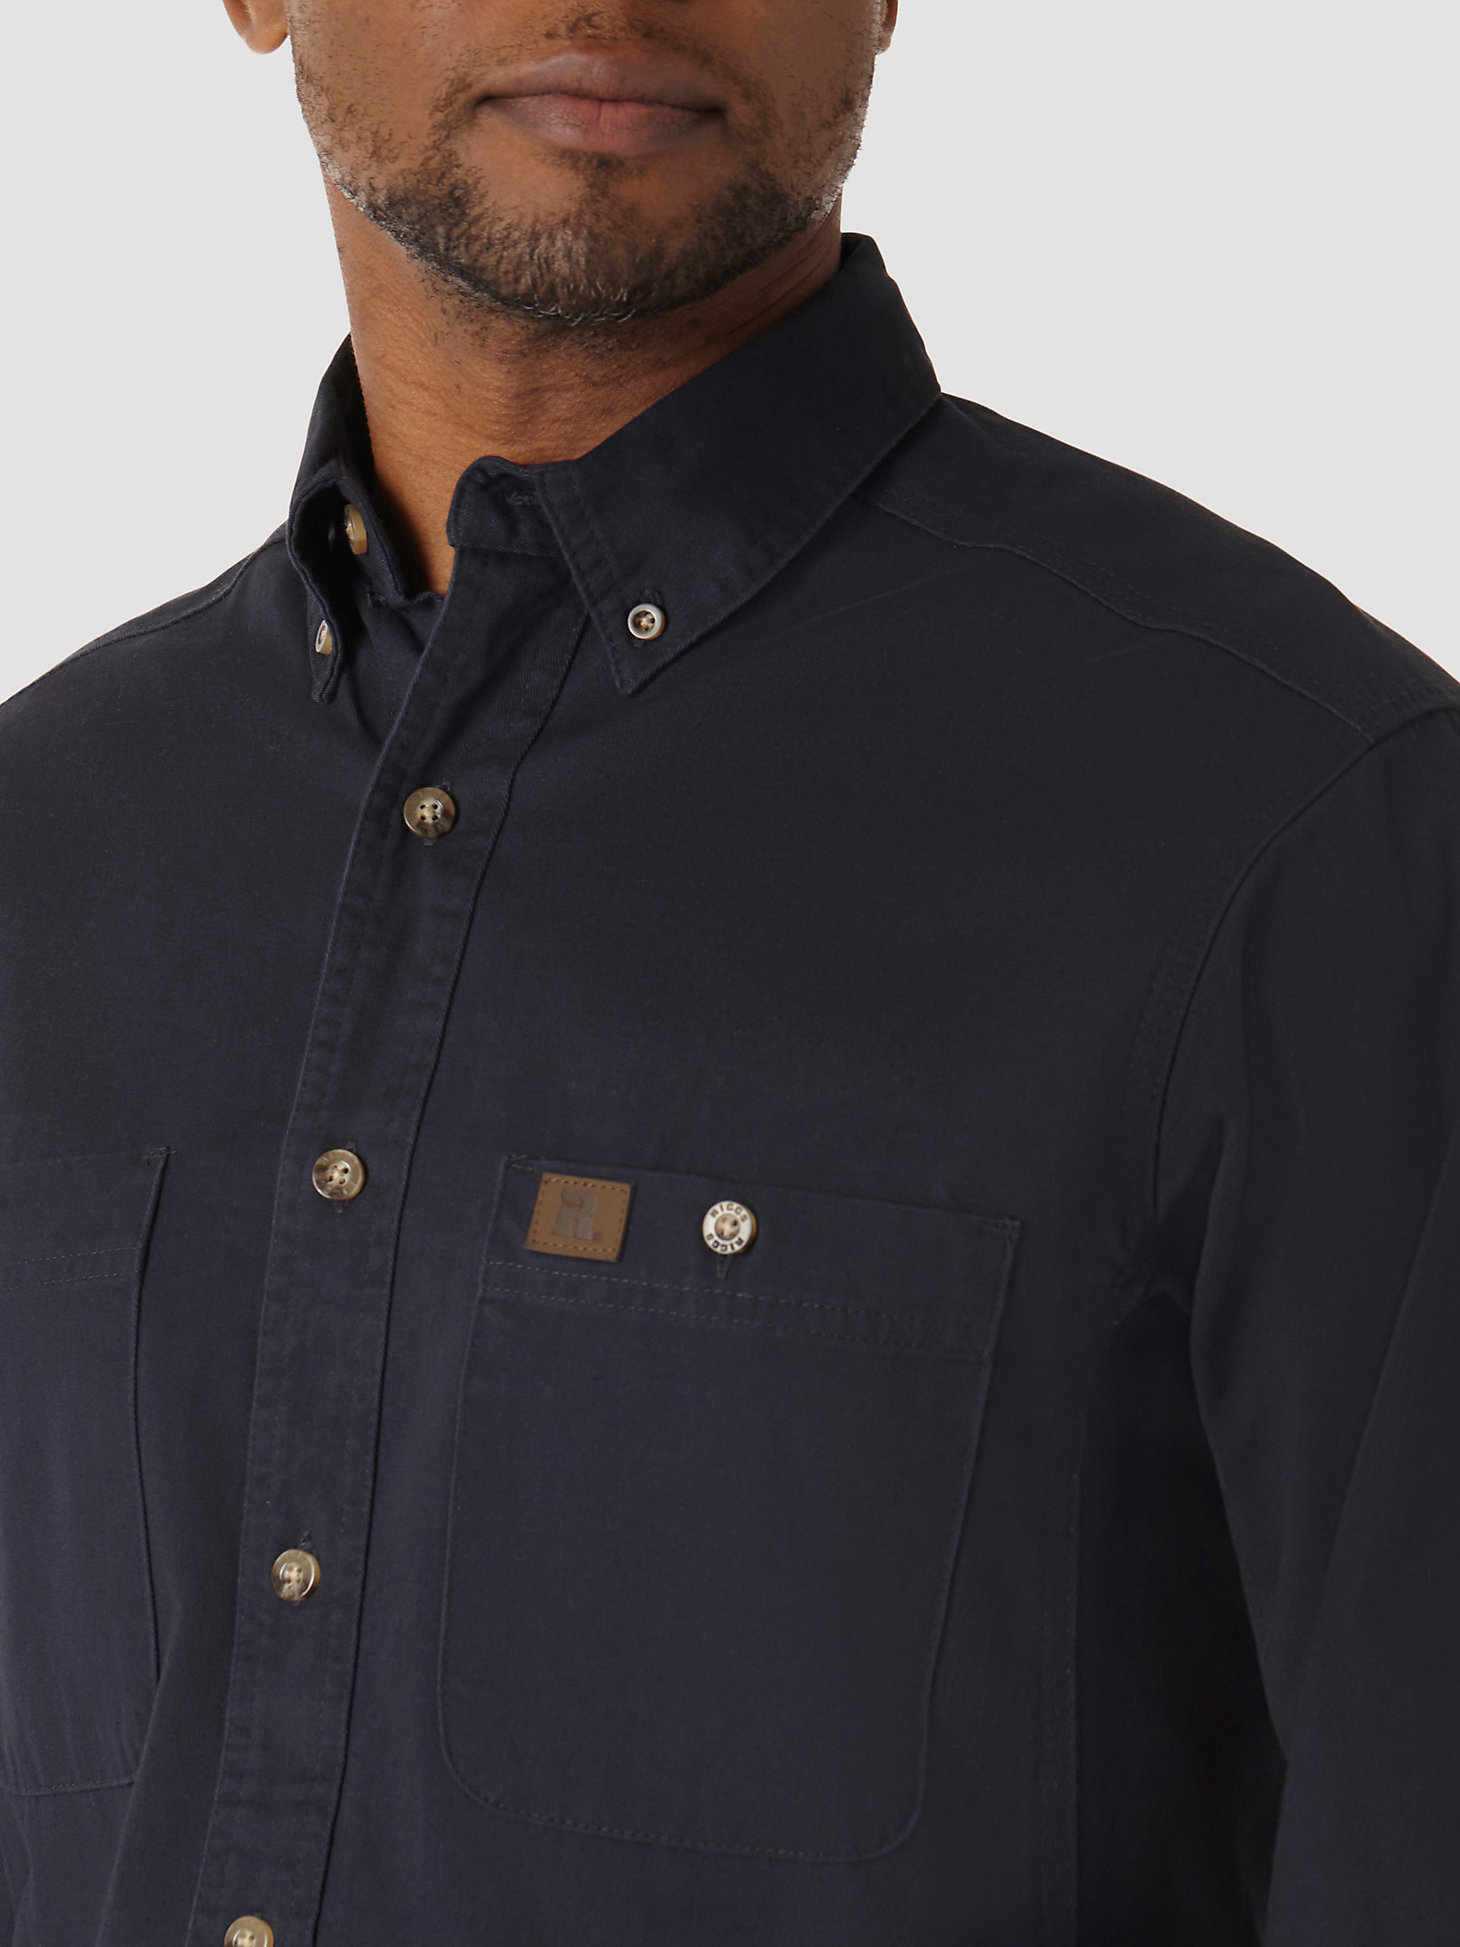 Navy Men's Wrangler Riggs Short Sleeve Shirt Size XL Color 